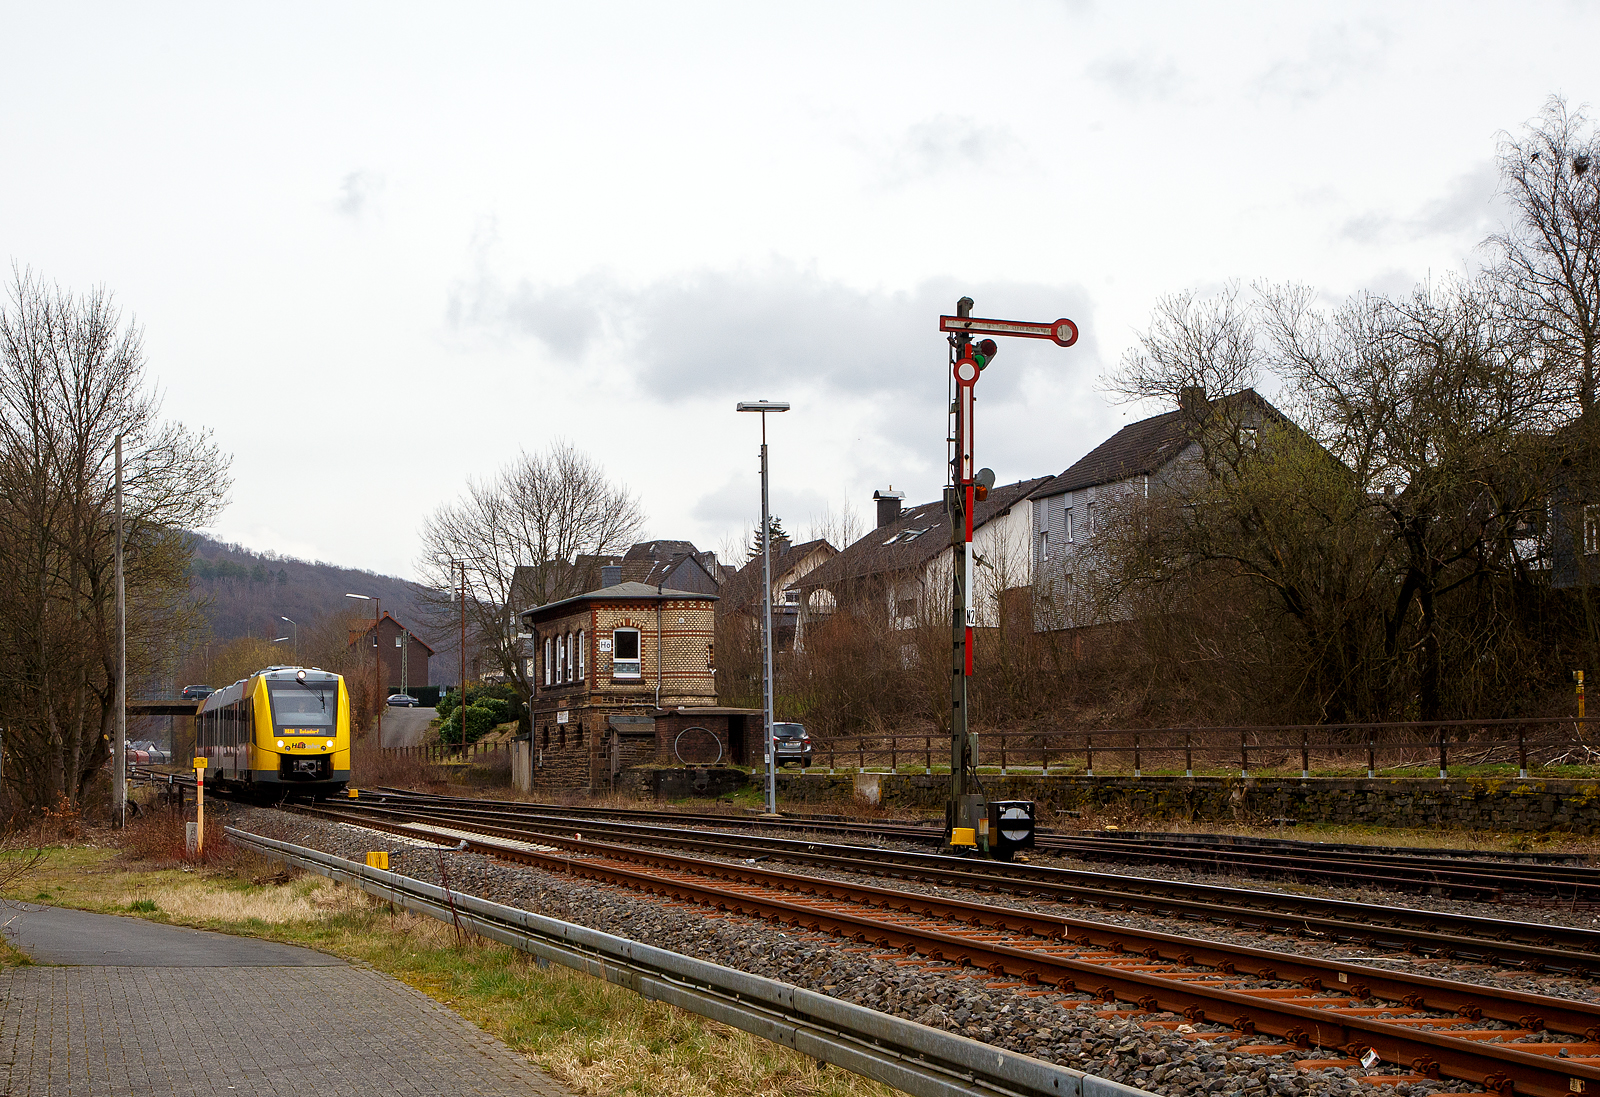 Nun fahren die Triebwagen der HLB RB 96 „Hellertalbahn“ auch endlich wieder den Bahnhof Herdorf an. Leider  ist aber dann in Herdorf am Hp Königstollen Schluss, ab dort gibt es dann von und nach Betzdorf (Sieg) SEV. Nach dem Hangrutsch (Felssturz) am 23. Dezember 2022 in Herdorf kurz hinter dem Hp  Königsstollen (bei km 88,4), ist der Abschnitt nach Betzdorf weiterhin bis mindestens bis zum kleinen Fahrplanwechsel am 11. Juni 2023, gesperrt. Aber diese ungewöhnliche Führung bis zum Hp  Königsstollen, über den Bahnhof Herdorf hinaus ist nötig, denn in den nächsten Tagen sollen die der Abriss und der Neubau der „Hellerbrücke“ der Hellerstraße (bei „Steinaus Eck“) beginnen und der SEV wäre so nur noch über Daaden oder Kirchen möglich.

Hier erreicht der VT 506 (95 80 1648 106-0 D-HEB / 95 80 1648 606-9 D-HEB), ein Alstom Coradia LINT 41 der neuen Generation / neue Kopfform, der HLB (Hessische Landesbahn GmbH) am 20.03.2023, als RB 96 „Hellertalbahn“ nach Betzdorf, bald den Bahnhof Herdorf.

Rechts das 1901 gebaute mechanische Weichenwärter Stellwerk Herdorf ost (Ho). Die beiden Stellwerke in Herdorf (Hf und Ho) sind in der Bauform Jüdel. Die Stellwerke der Bauform Jüdel (Max Jüdel & Co, Braunschweig) sind neben der Einheitsbauform am häufigsten in Deutschland anzutreffen. Viele andere Stellwerkshersteller haben Jüdel-Stellwerke in Lizenz gefertigt und dabei mehr oder weniger starke Änderungen vorgenommen.